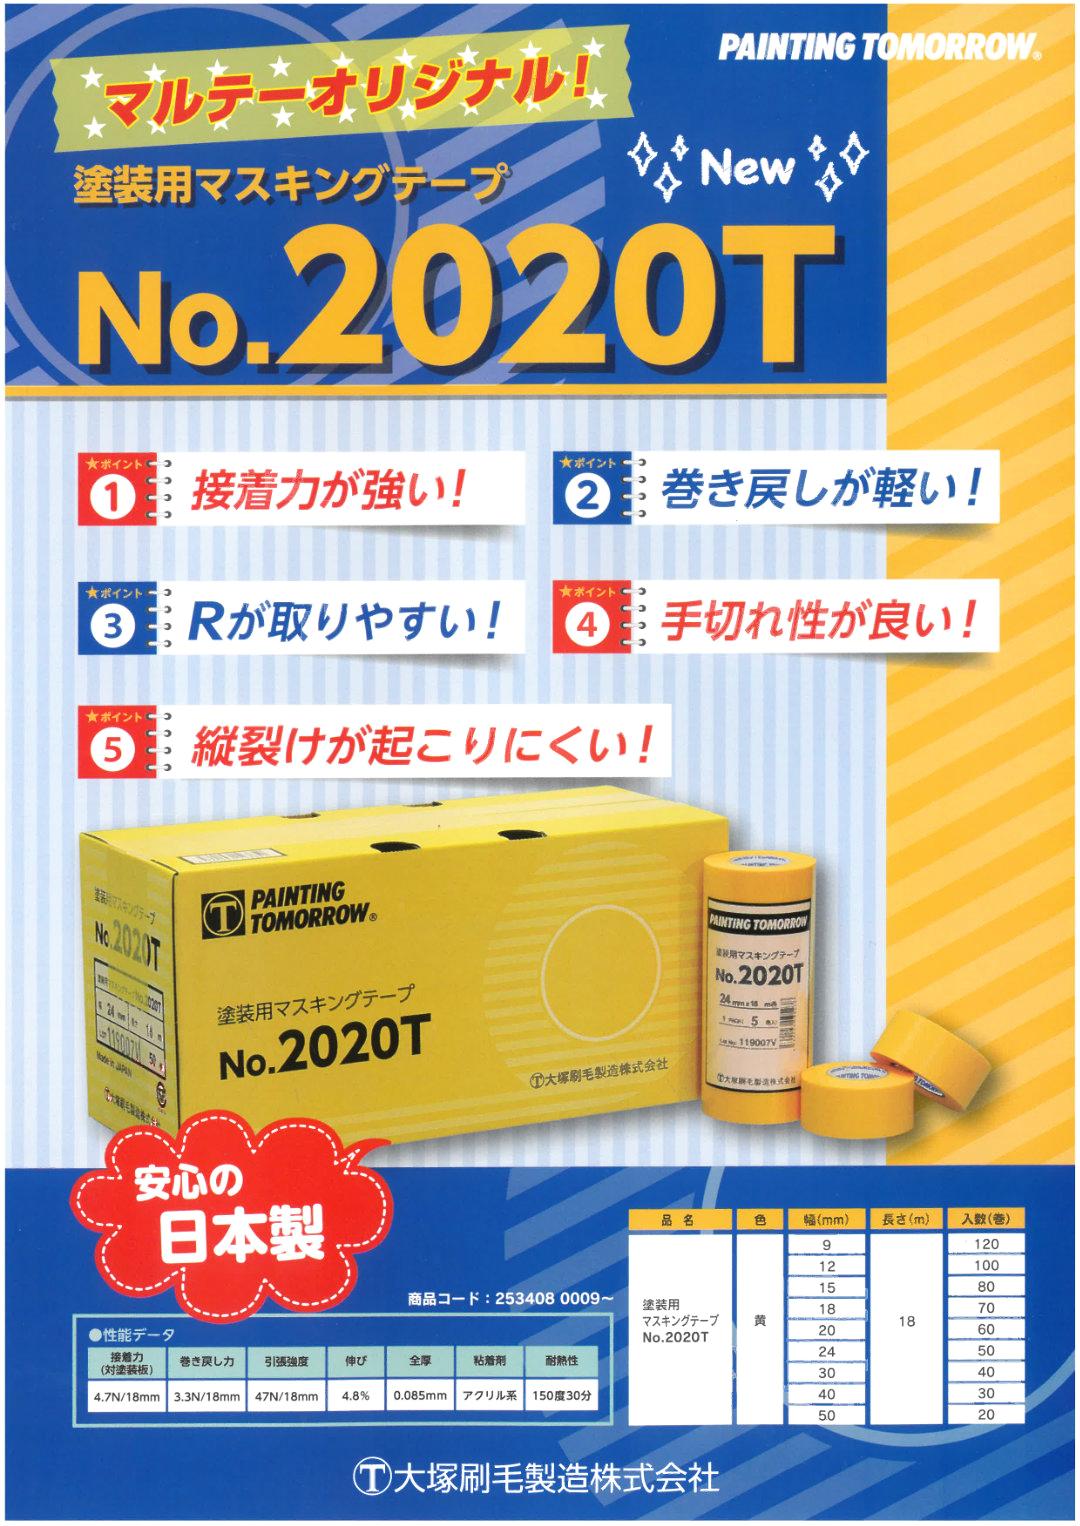 No.2020T 塗装用マスキングテープ 黄 12mm 100巻入り 2箱 セット 【送料無料】画像